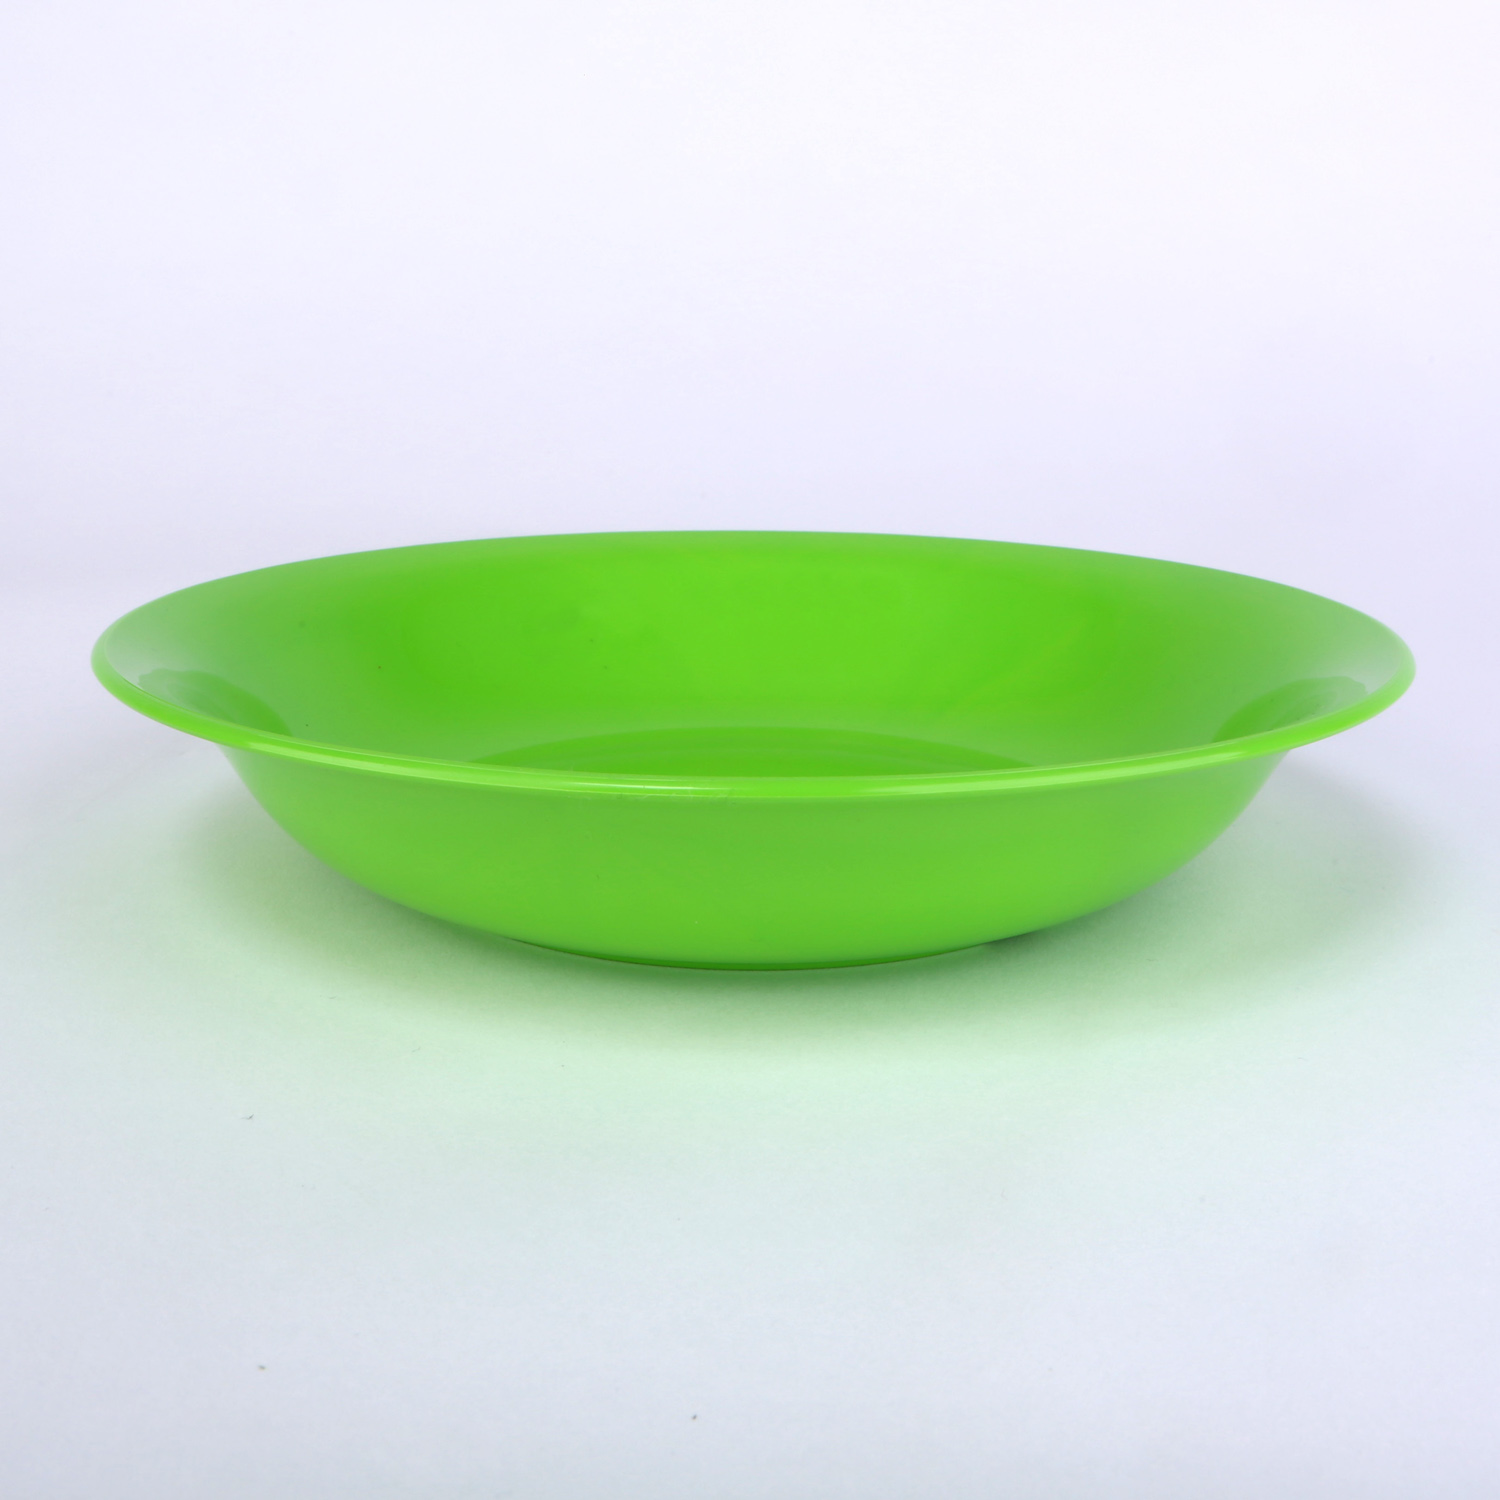 vaLon Zephyr Suppenteller 20,5 cm aus schadstofffreiem Kunststoff in der Farbe grasgrün.